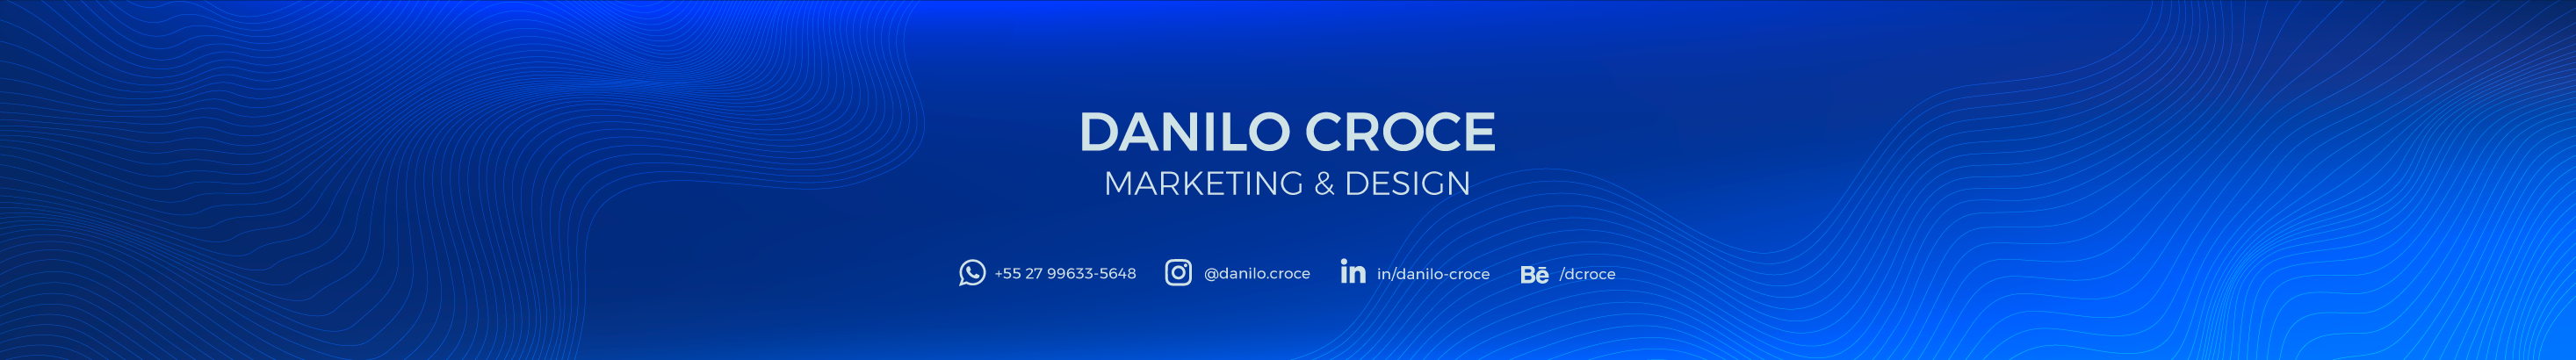 Danilo Croces profilbanner